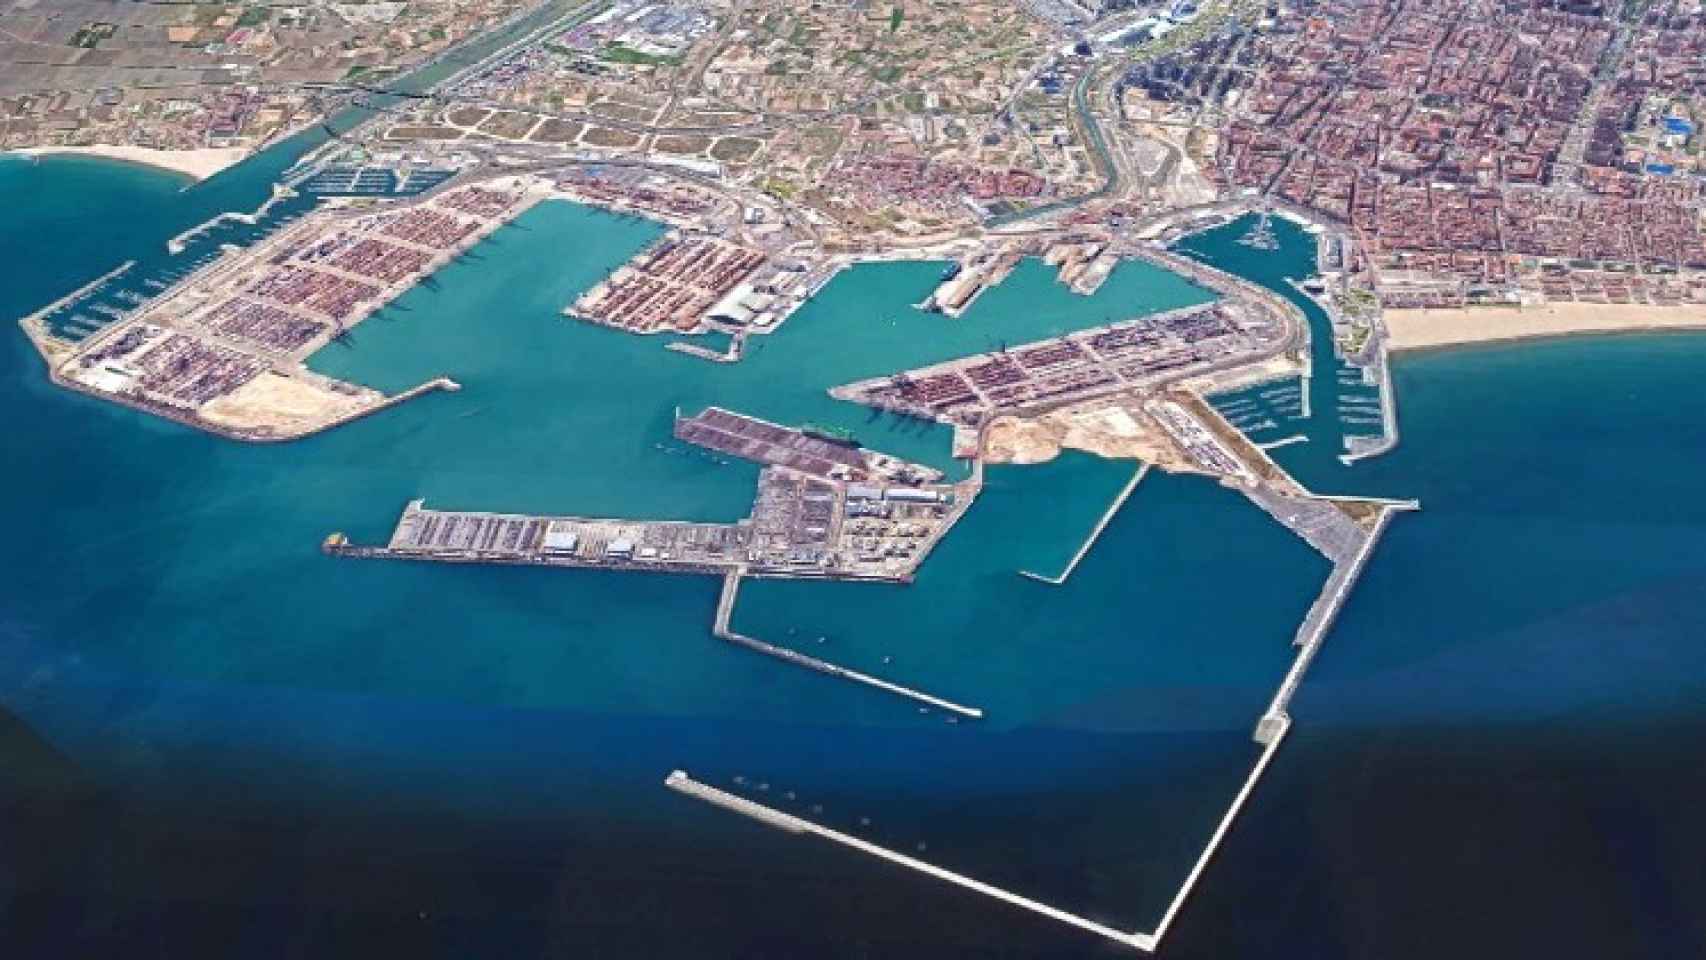 Vista aérea del Puerto de Valencia. En primer plano, el dique ya construido de la ampliación norte. EE